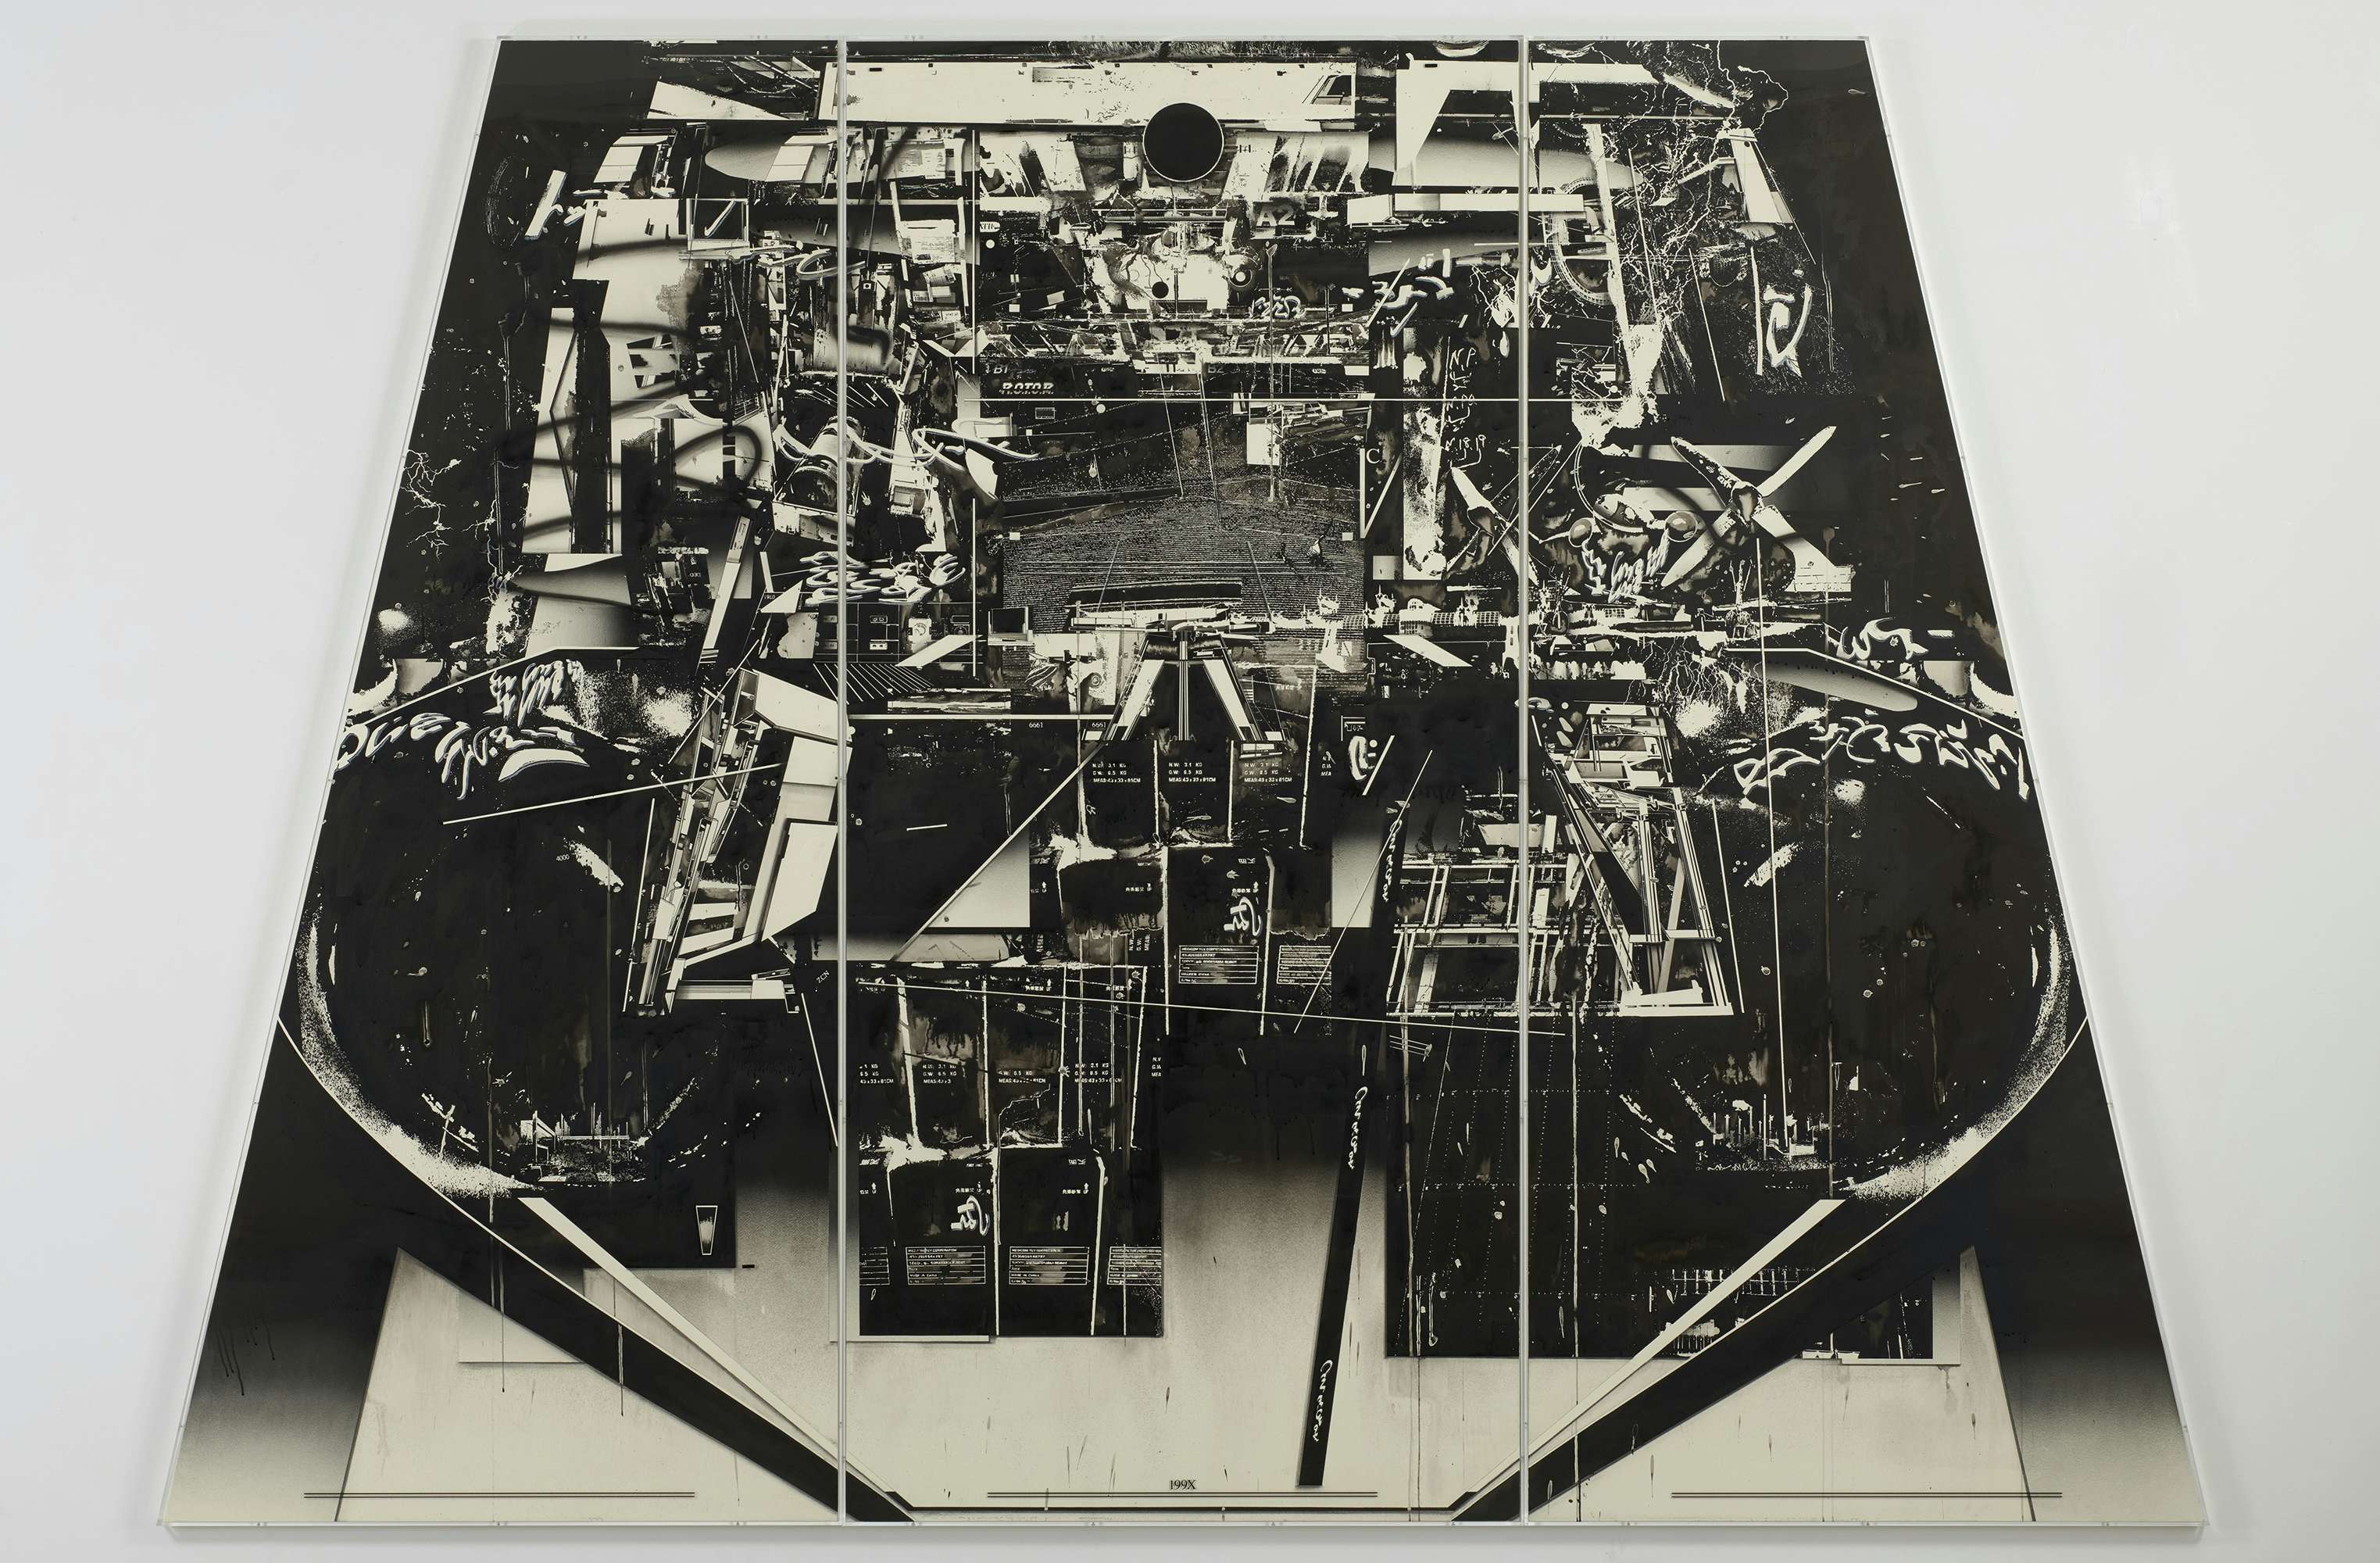 199X」年に文明が滅んだとして。MoMA所蔵の美術家・佃弘樹が「事後の世界観」を表現した新作を発表｜美術手帖